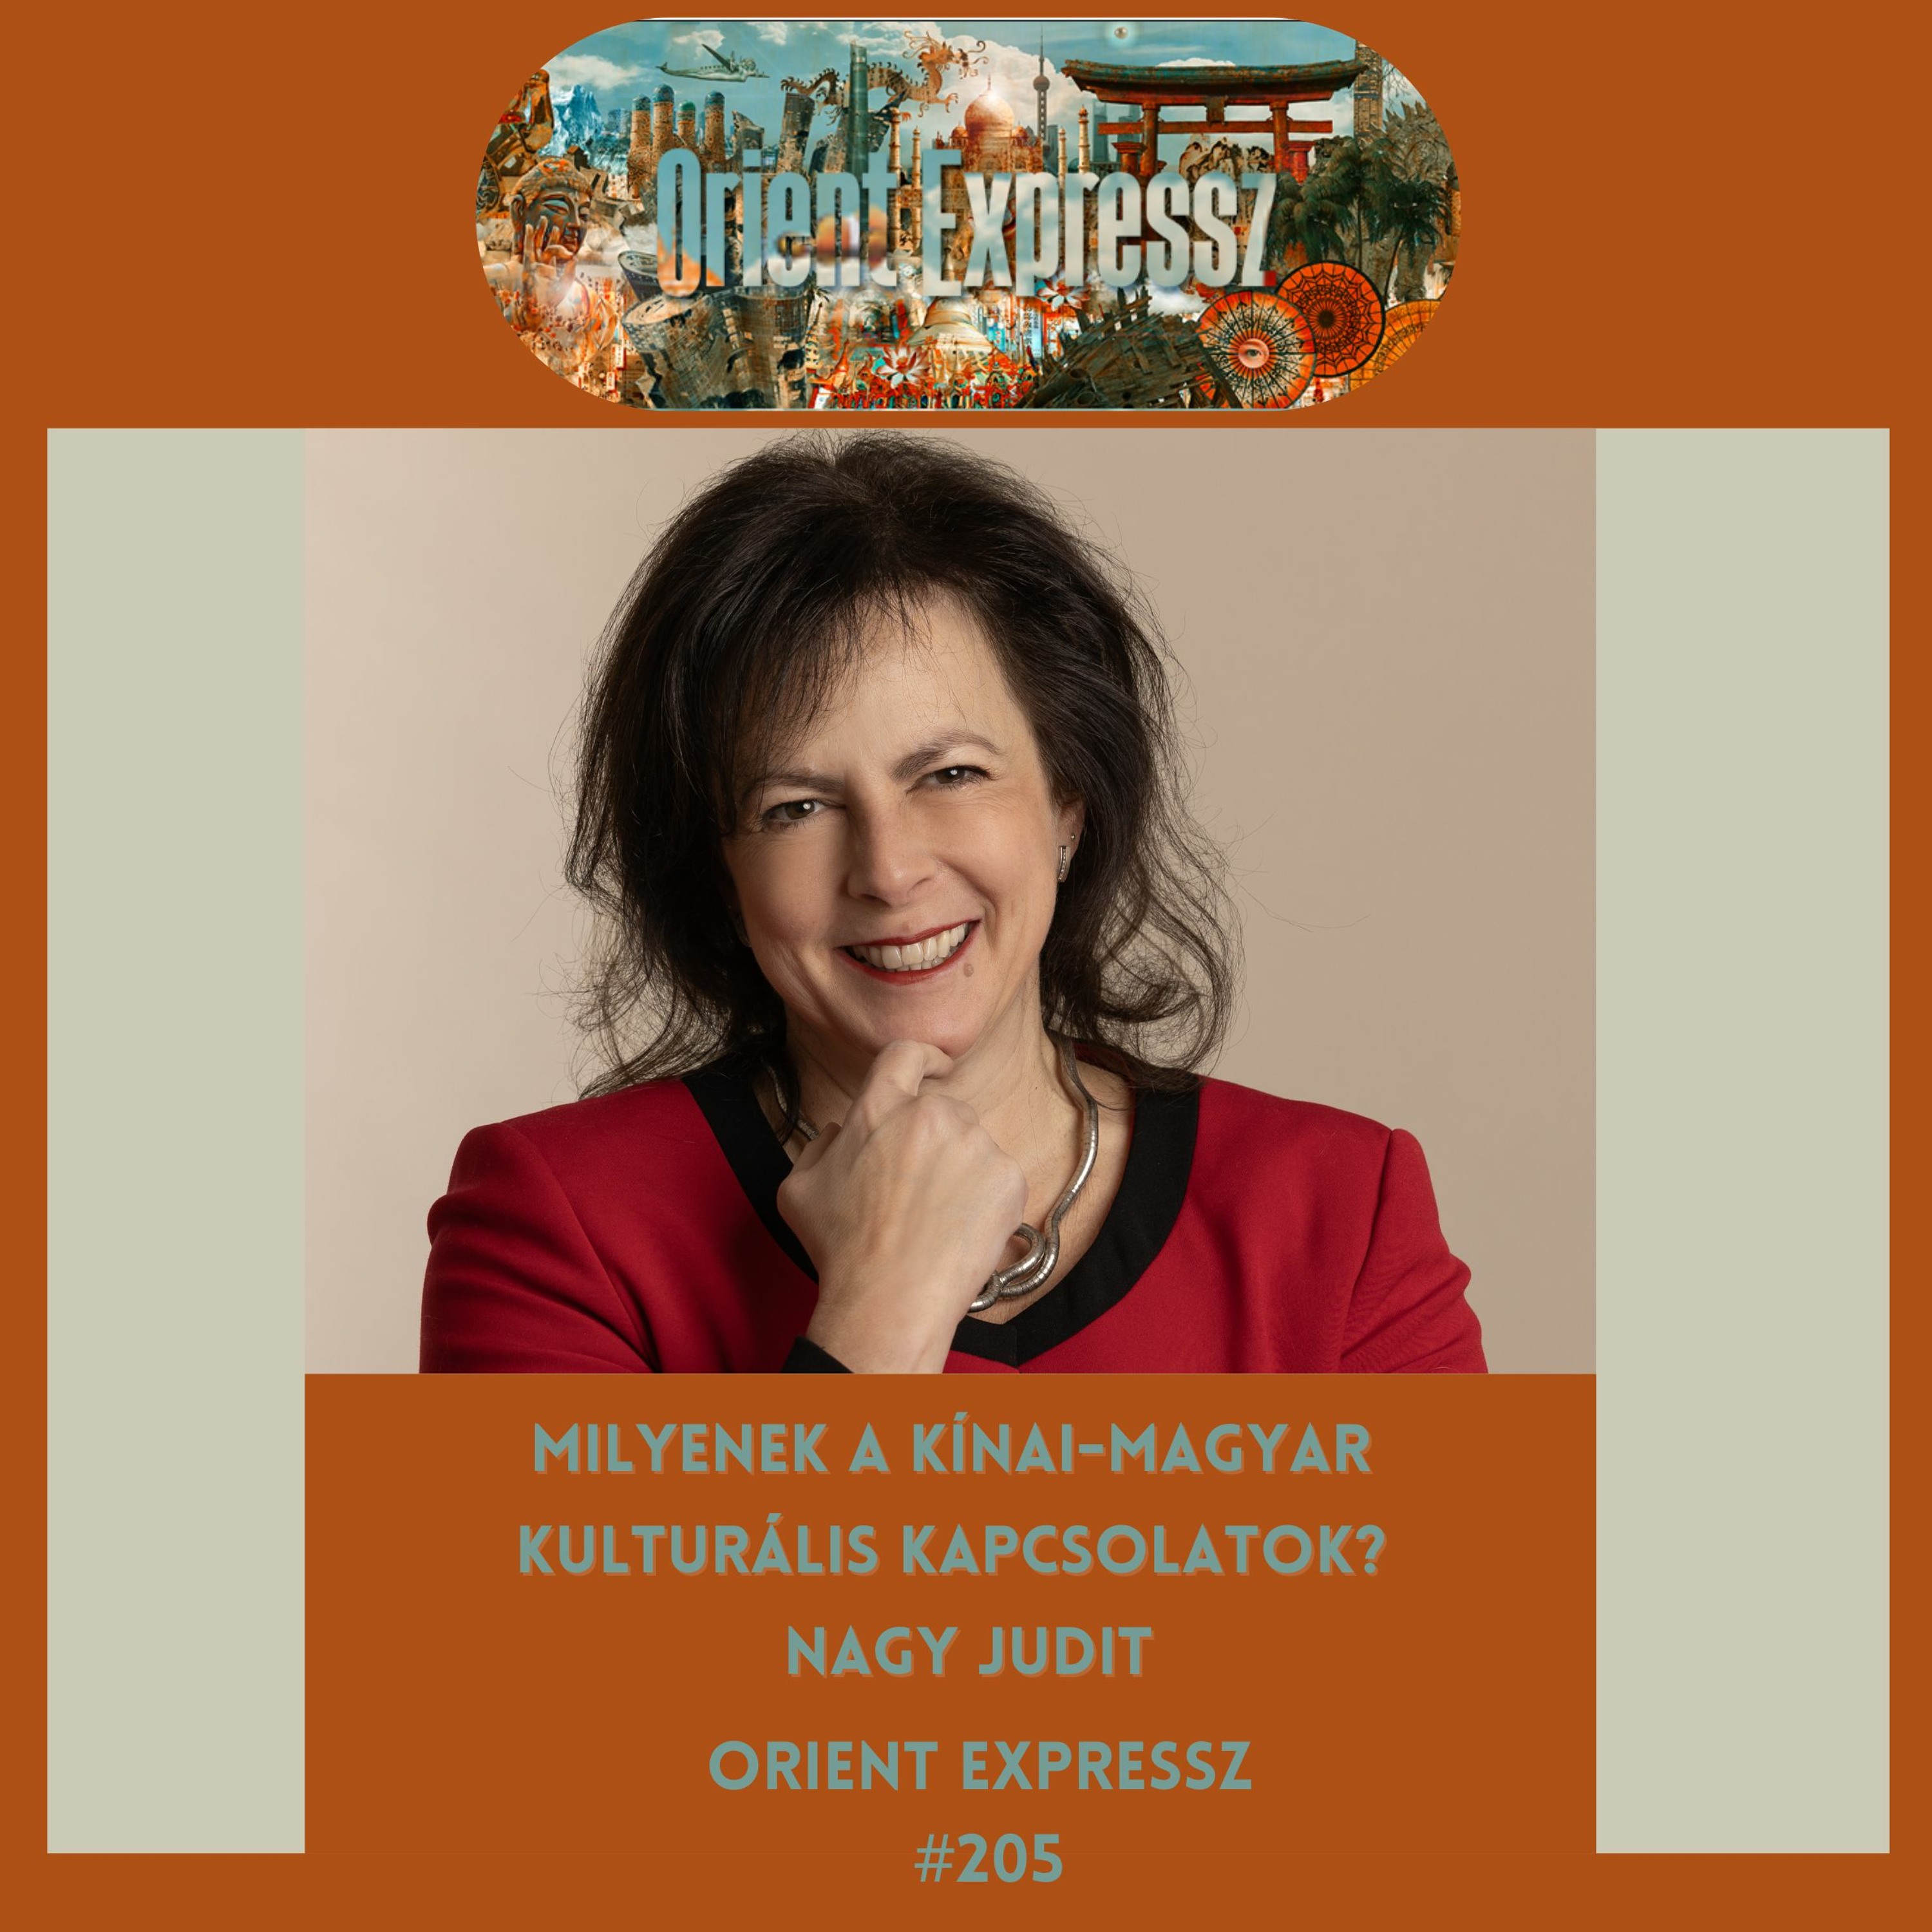 Orient Expressz 205: Milyenek a kínai-magyar kulturális kapcsolatok? – Nagy Judit